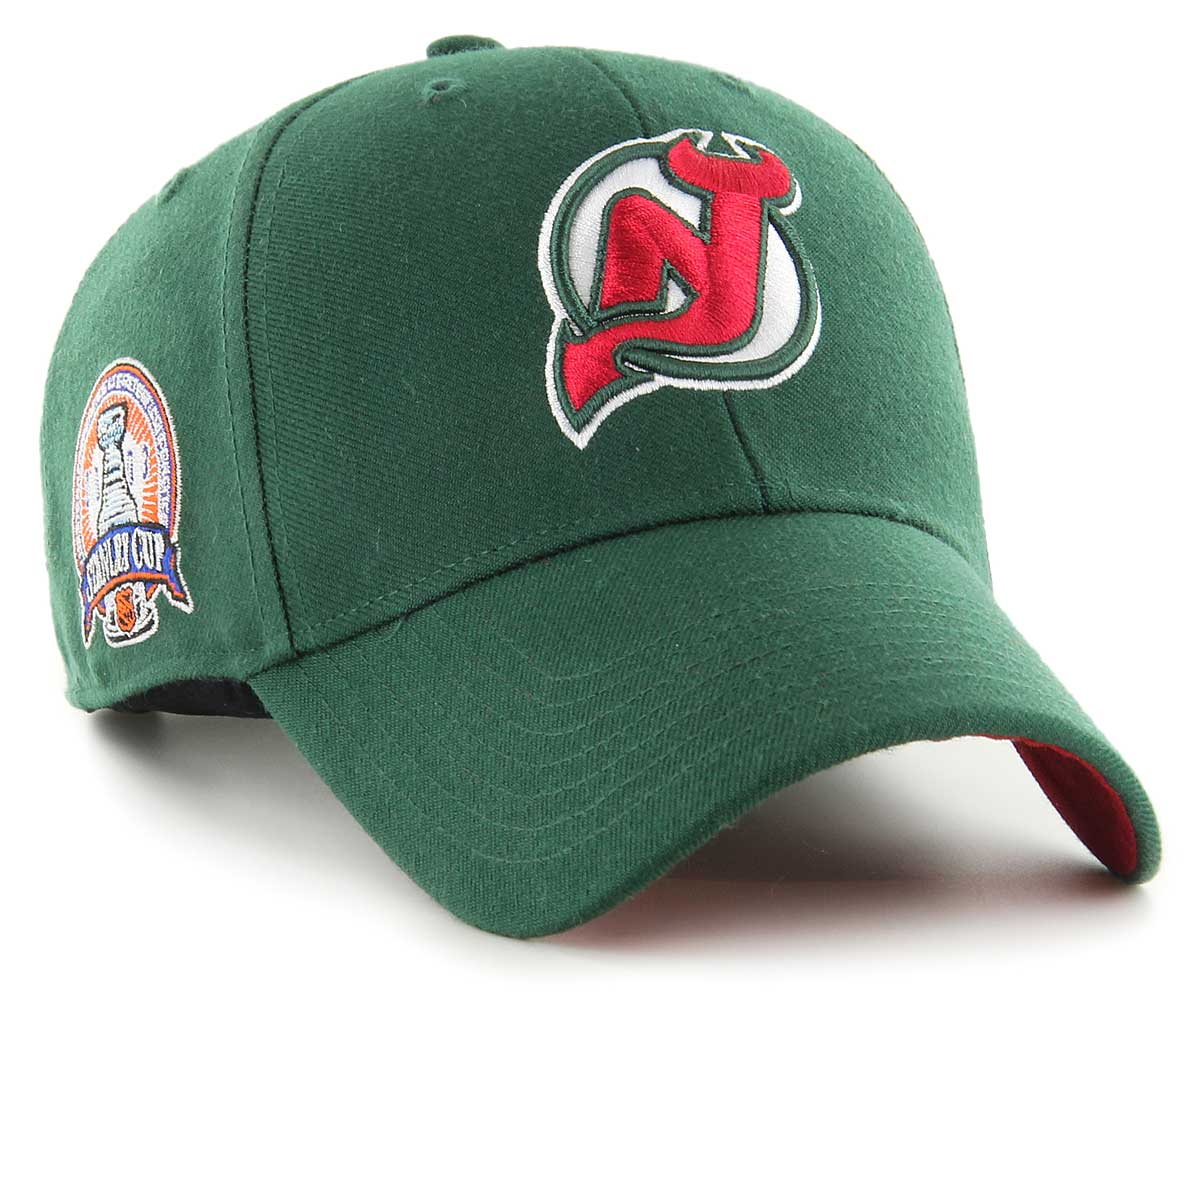 New Jersey Devils Cap